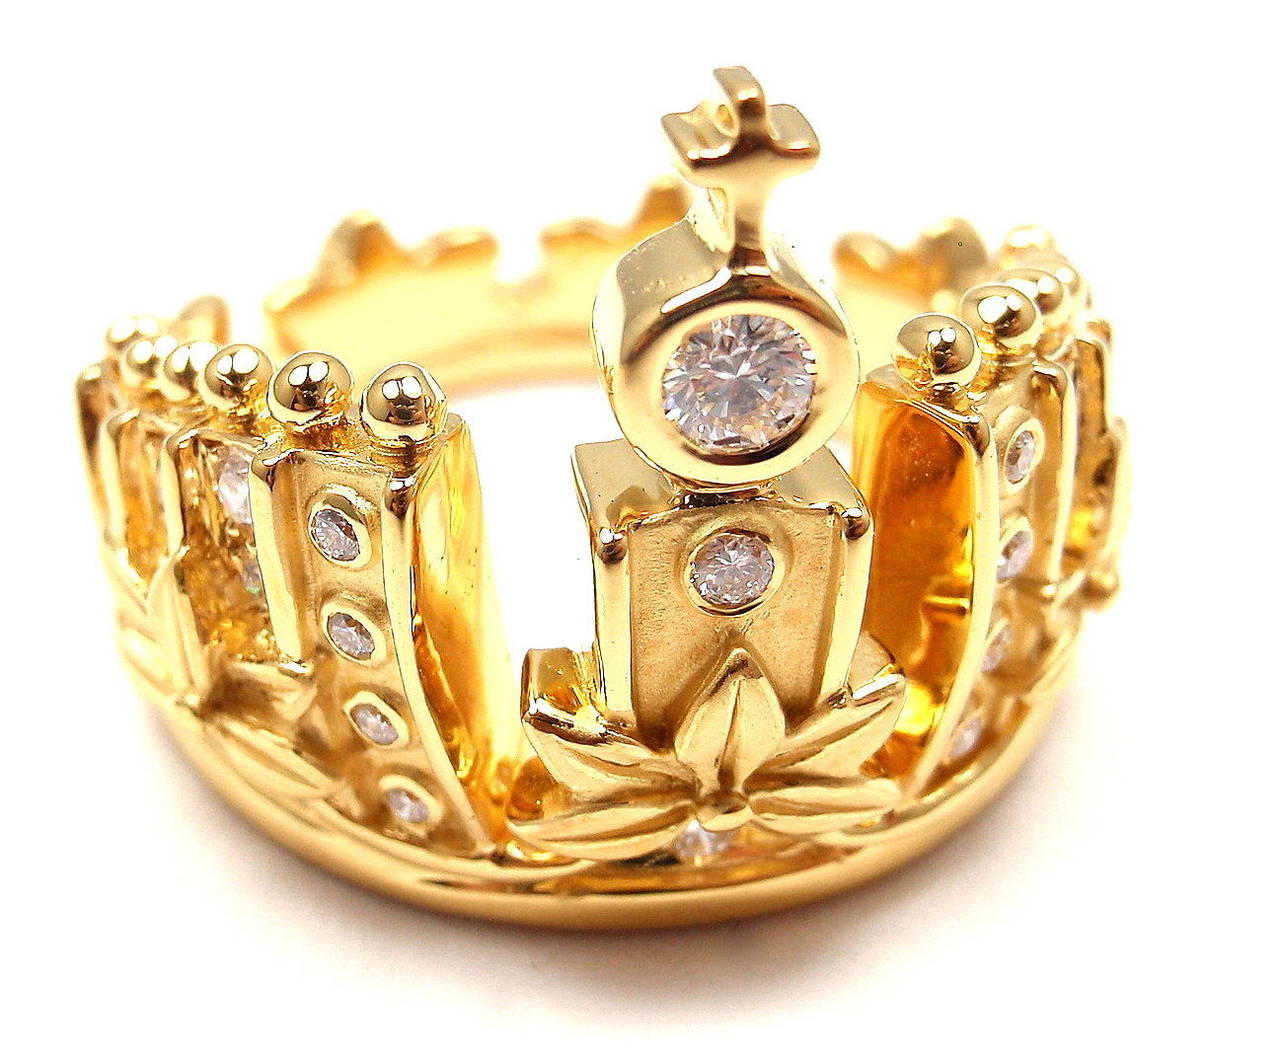 18k Gelbgold Mi Prinzen Russische Krone Diamant Ring von Carrera Y Carrera.
Mit 23 runden Diamanten im Brillantschliff VS1 Reinheit, G Farbe Gesamtgewicht ca.: 0,37ct

Dieser Ring kommt mit Box Zertifikat und Tag.

Einzelheiten:
Ringgröße: